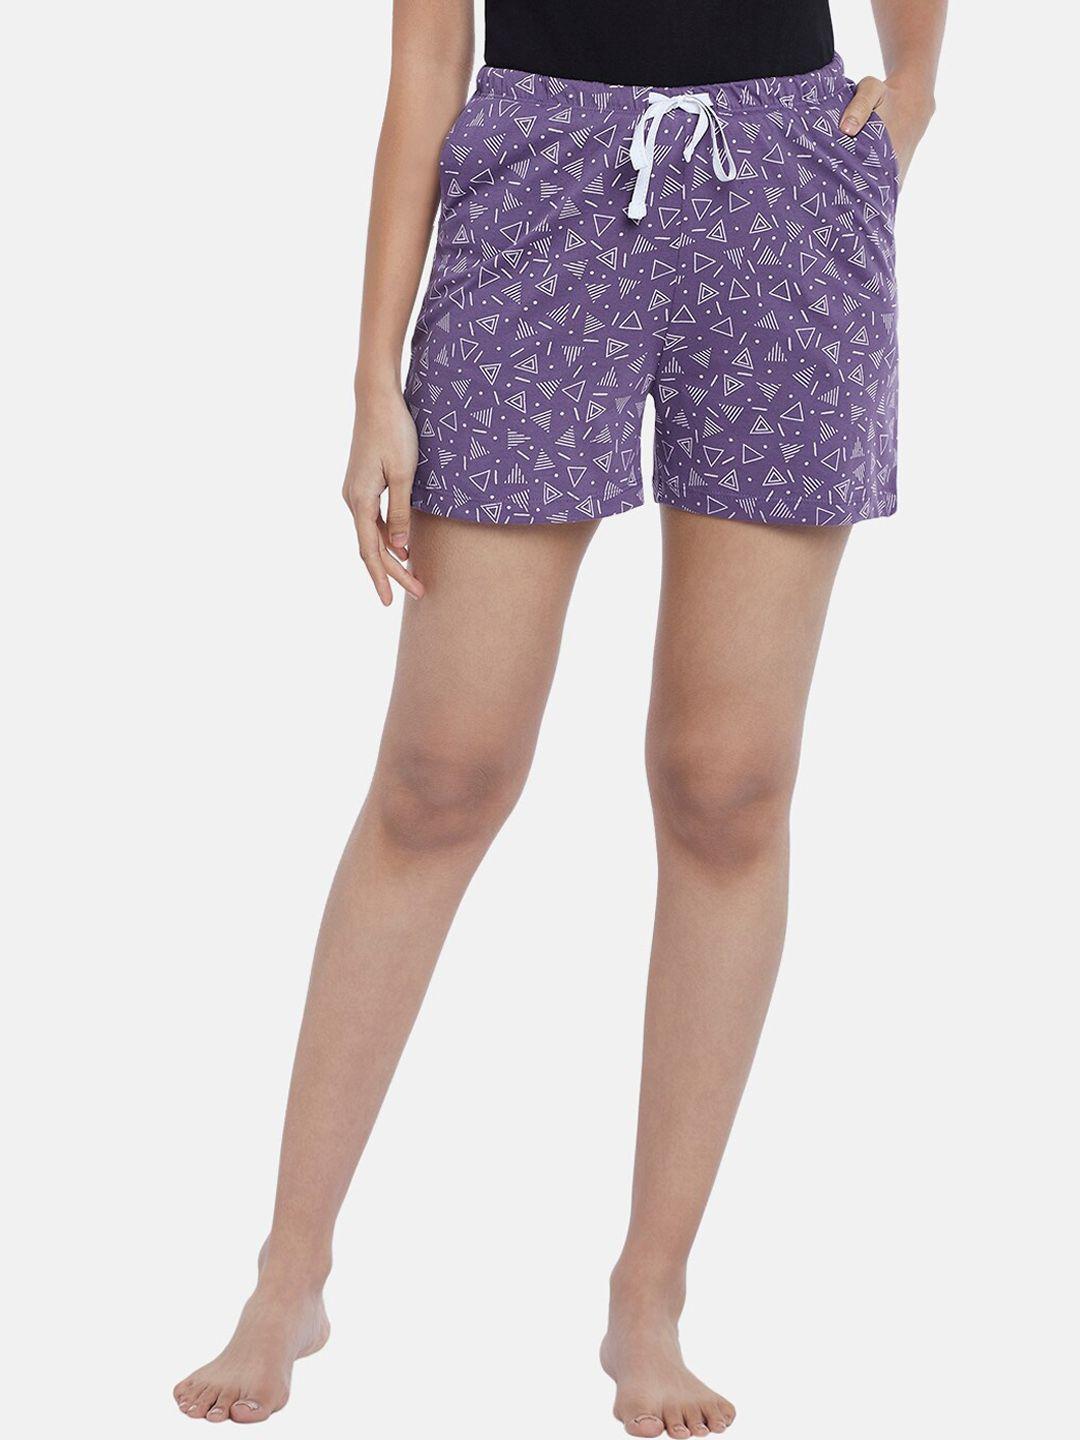 dreamz by pantaloons women purple & white printed lounge shorts